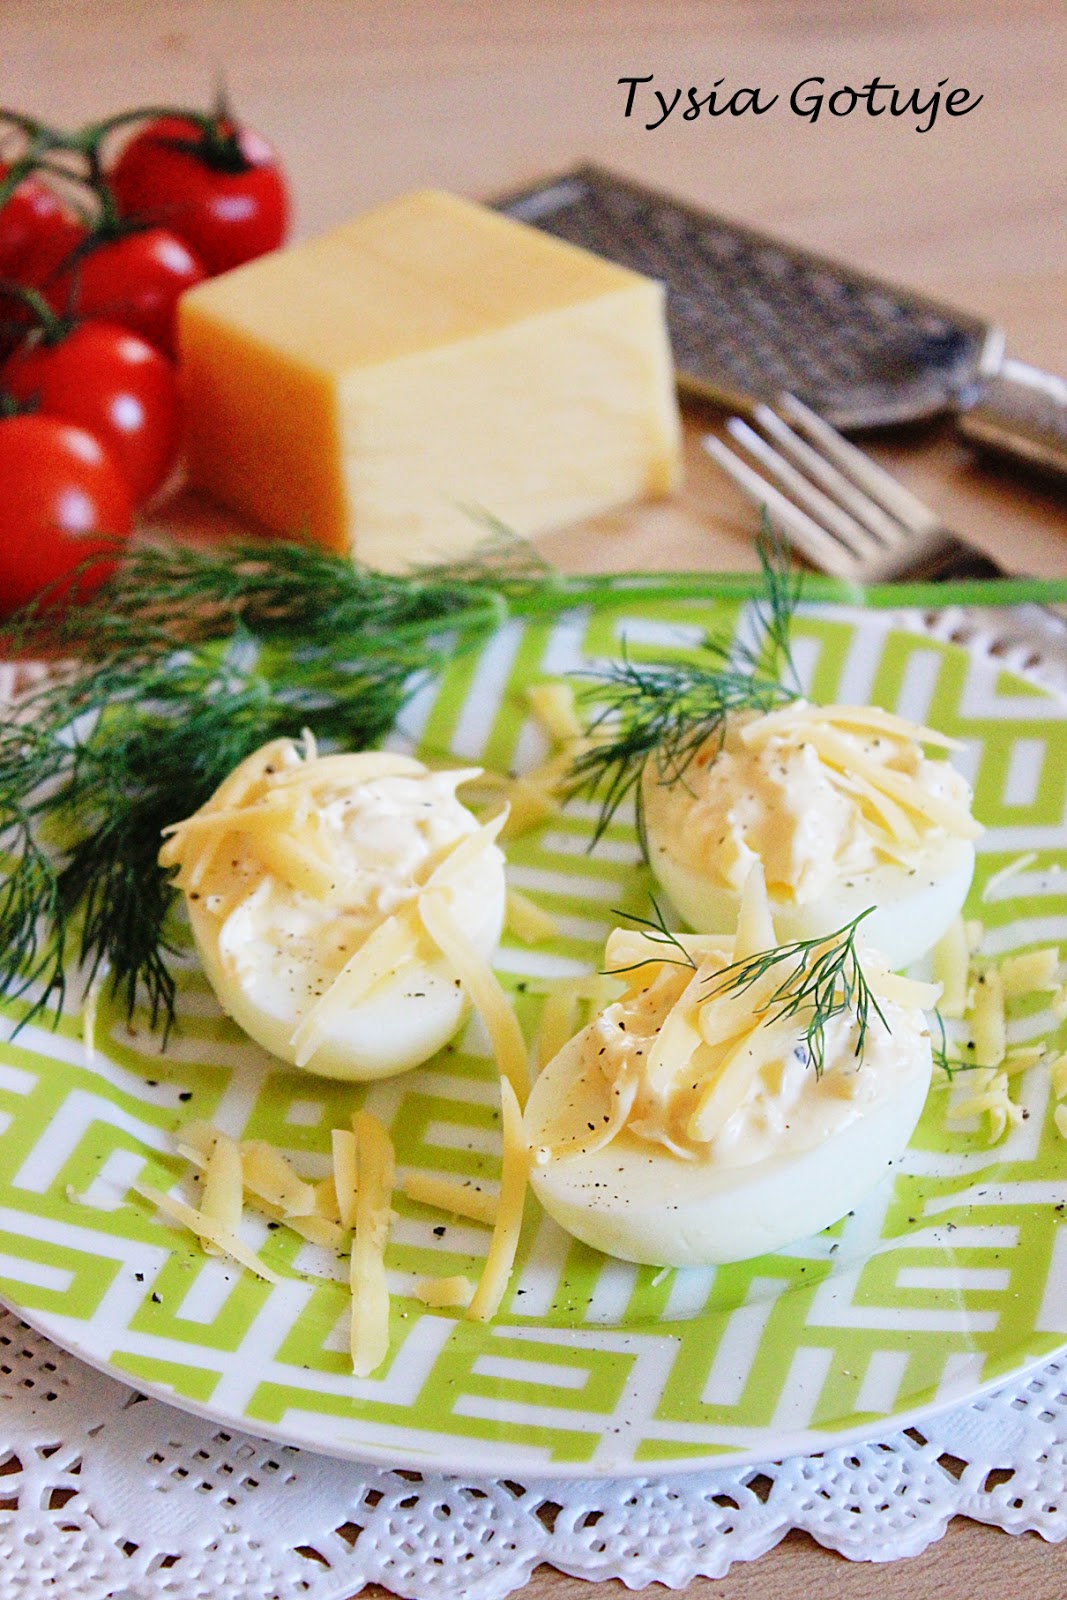 Jajka faszerowane żółtym serem